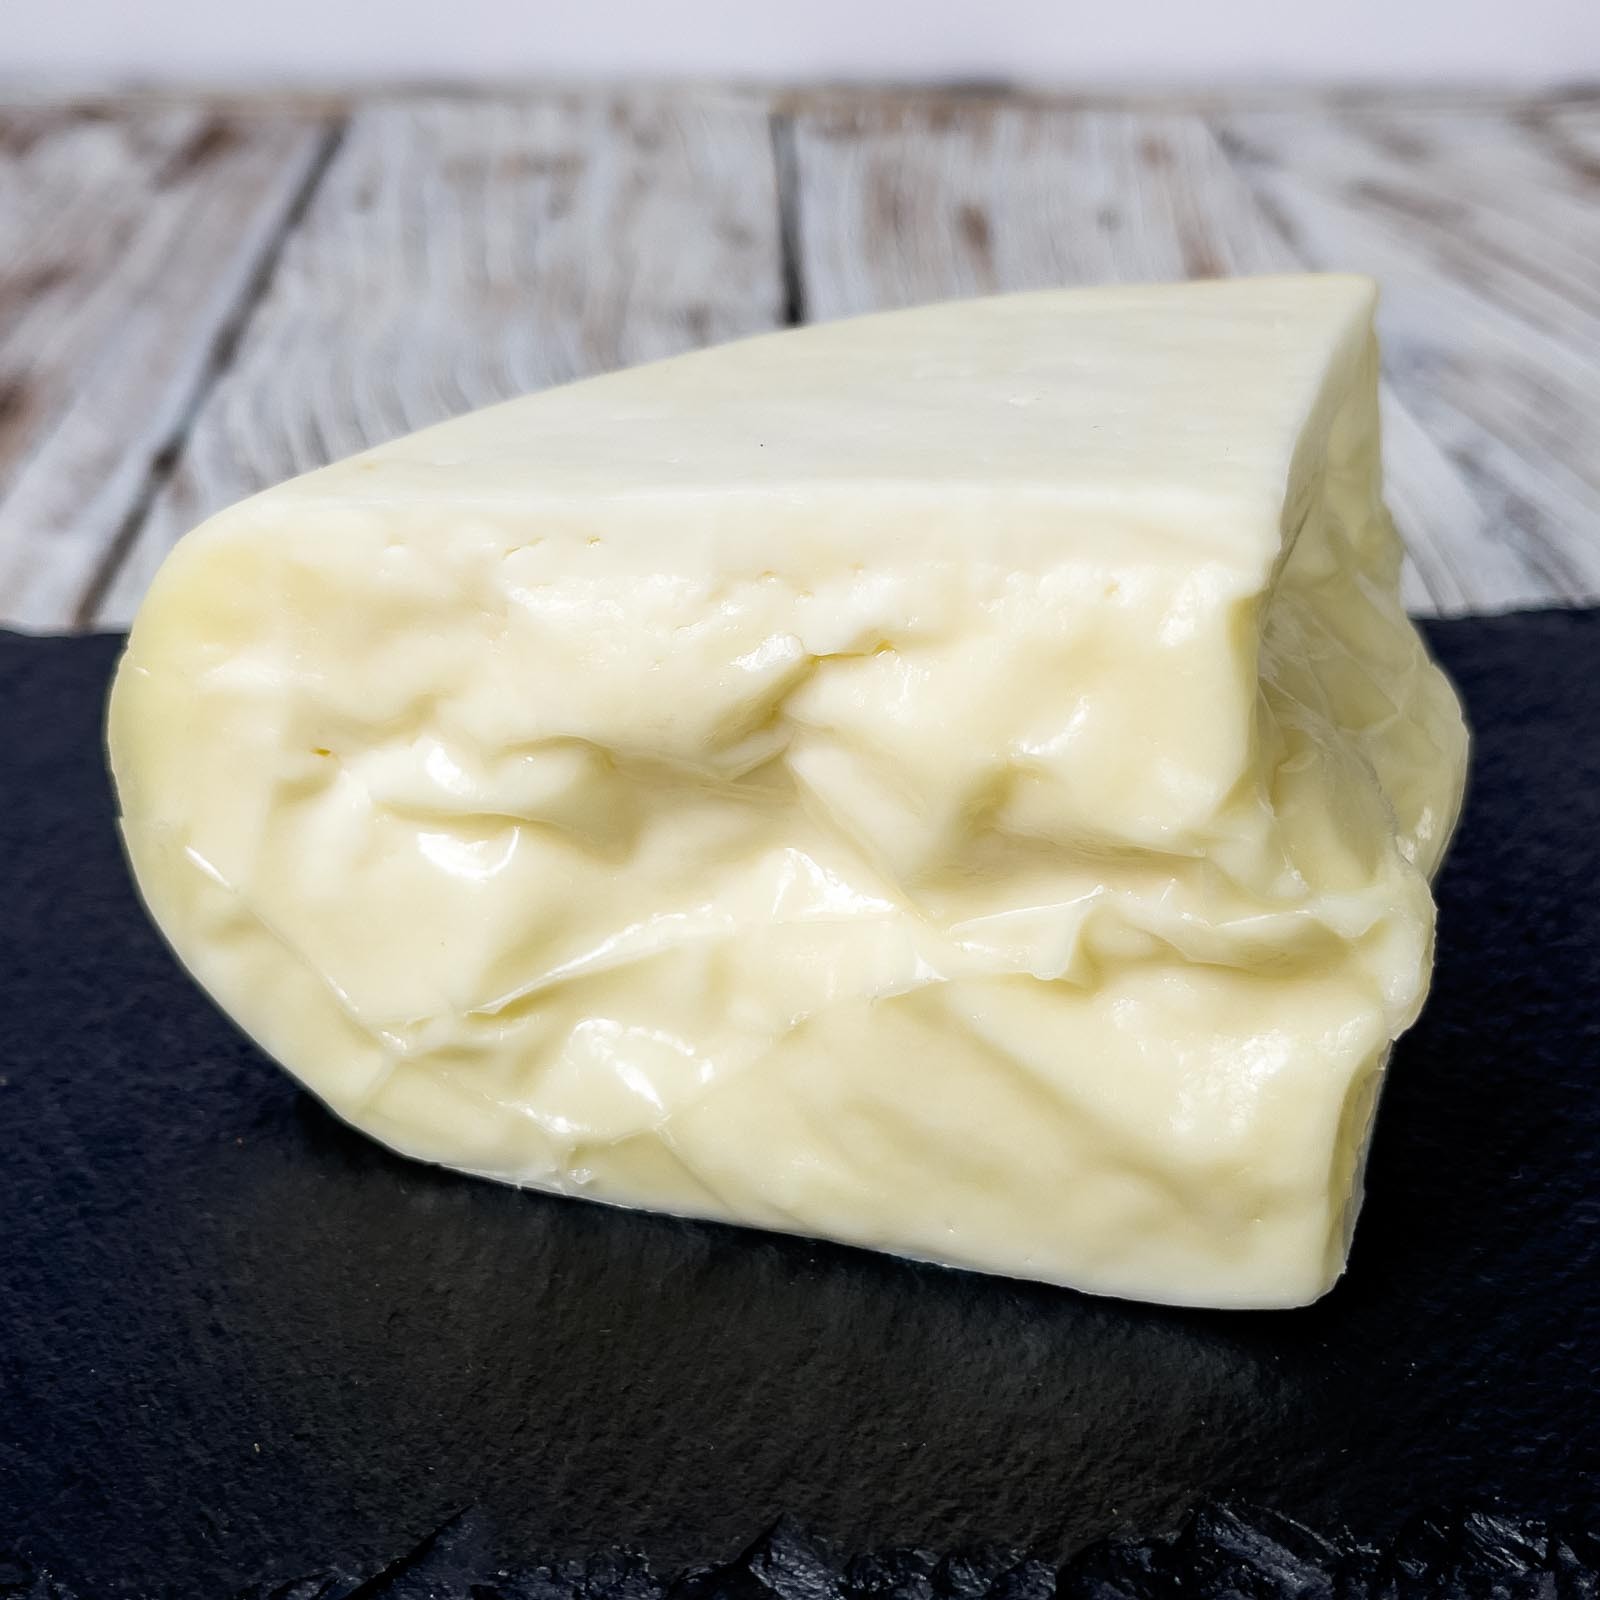 „Giovane” Frischer Pecorino-Käse ist ein weicher und leicht streichfähiger Käse, der in Italien mit hochwertigen Zutaten und ausschließlich aus italienischer Schafsmilch hergestellt wird. Sein intensiver und gleichzeitig delikater Geschmack macht ihn sehr vielseitig in der Küche, kann aber auch roh gegessen werden.